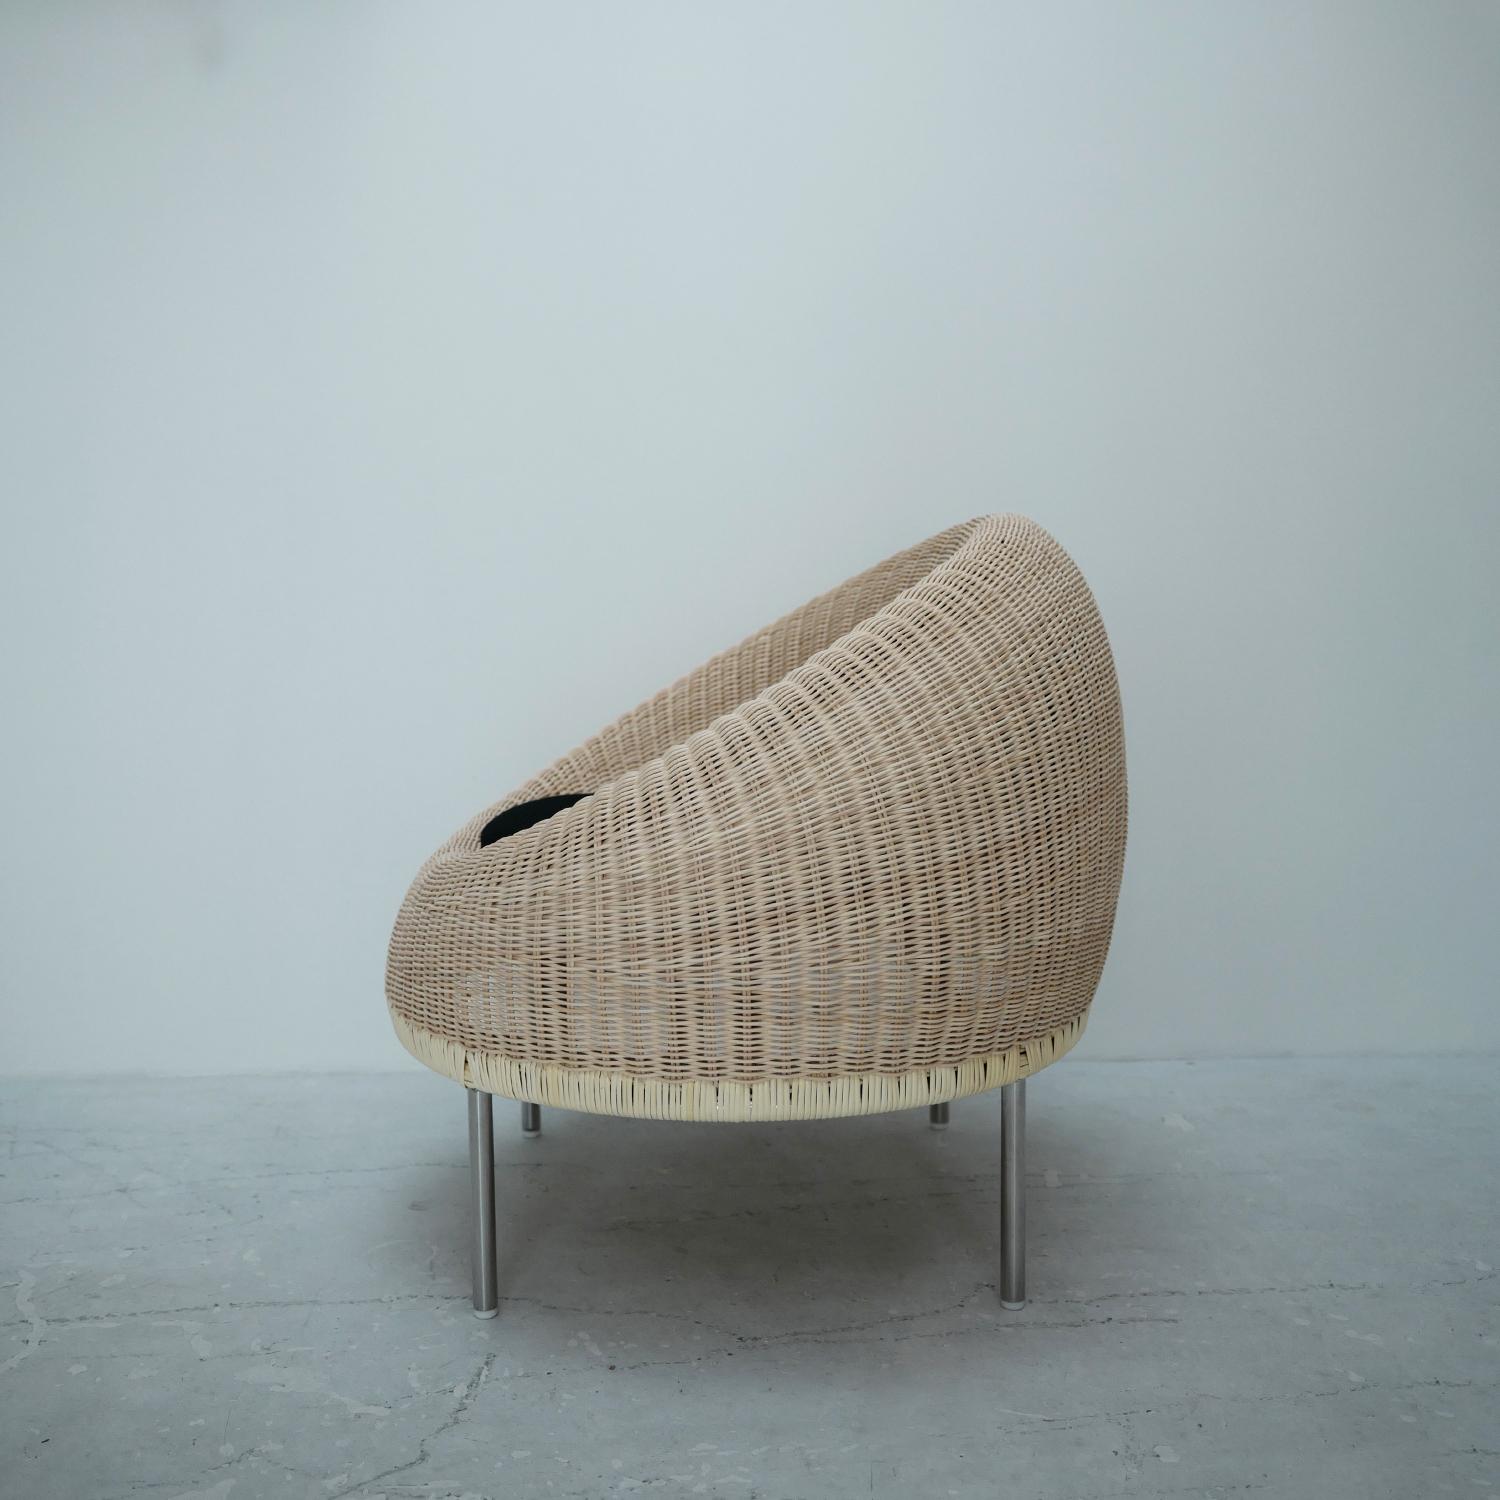 Dieser Loungesessel wurde 1960 von Isamu Kenmochi Design Laboratory vorgestellt. Sie wurde für die Installation im Otone Country Club in Japan entworfen. Es handelt sich um ein seltenes Stück aus Isamu Kenmochis charakteristischer Rattanserie, bei